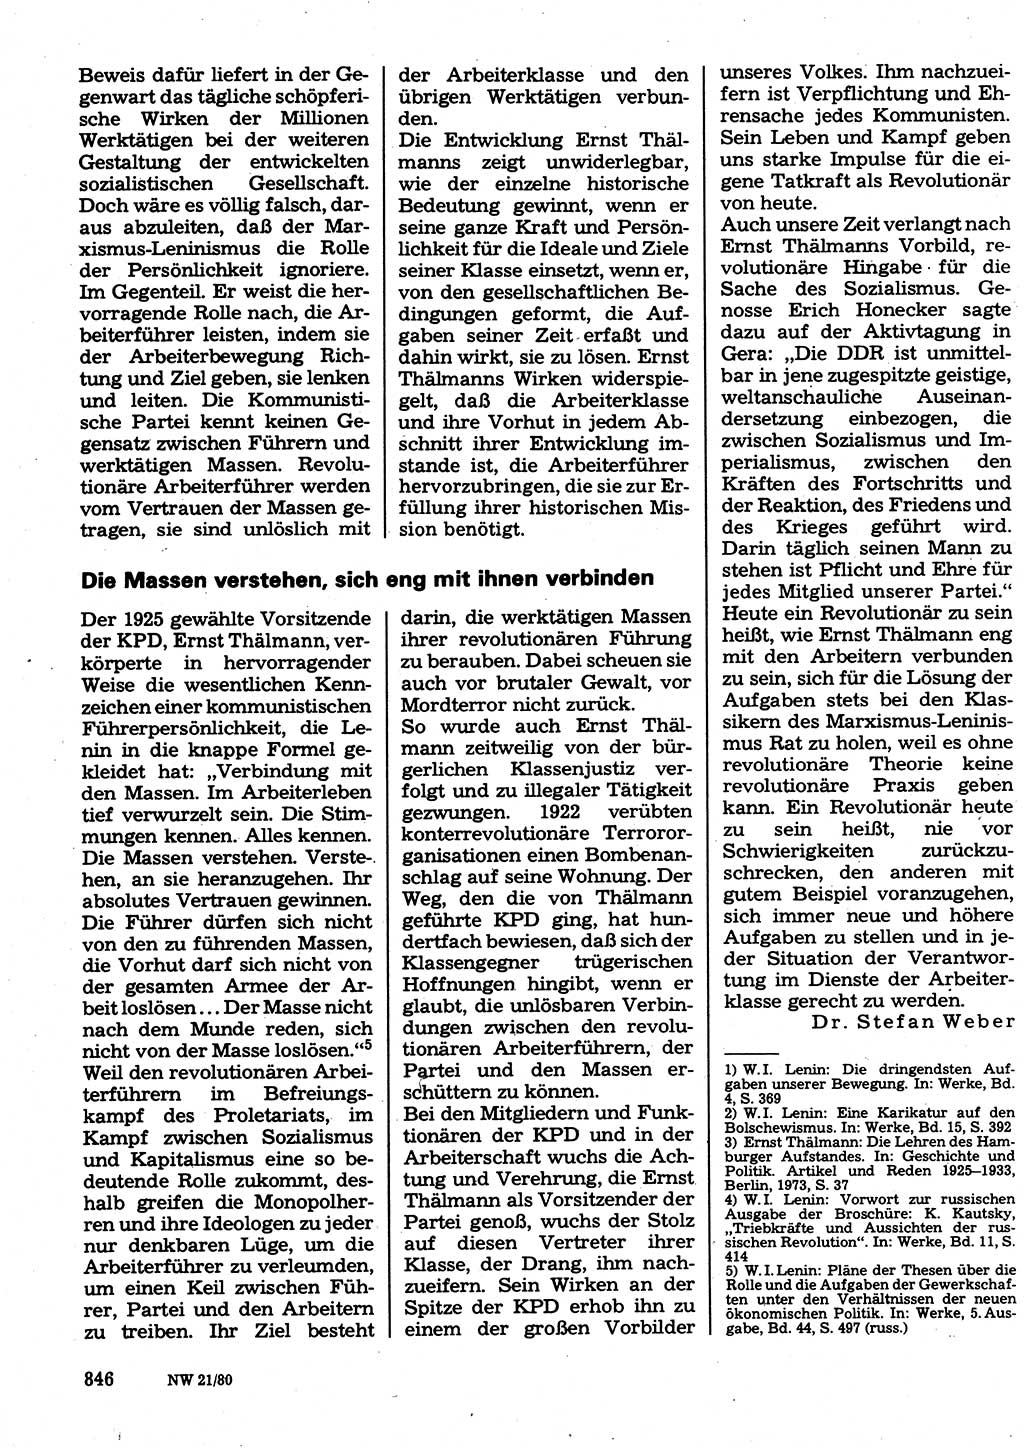 Neuer Weg (NW), Organ des Zentralkomitees (ZK) der SED (Sozialistische Einheitspartei Deutschlands) für Fragen des Parteilebens, 35. Jahrgang [Deutsche Demokratische Republik (DDR)] 1980, Seite 846 (NW ZK SED DDR 1980, S. 846)